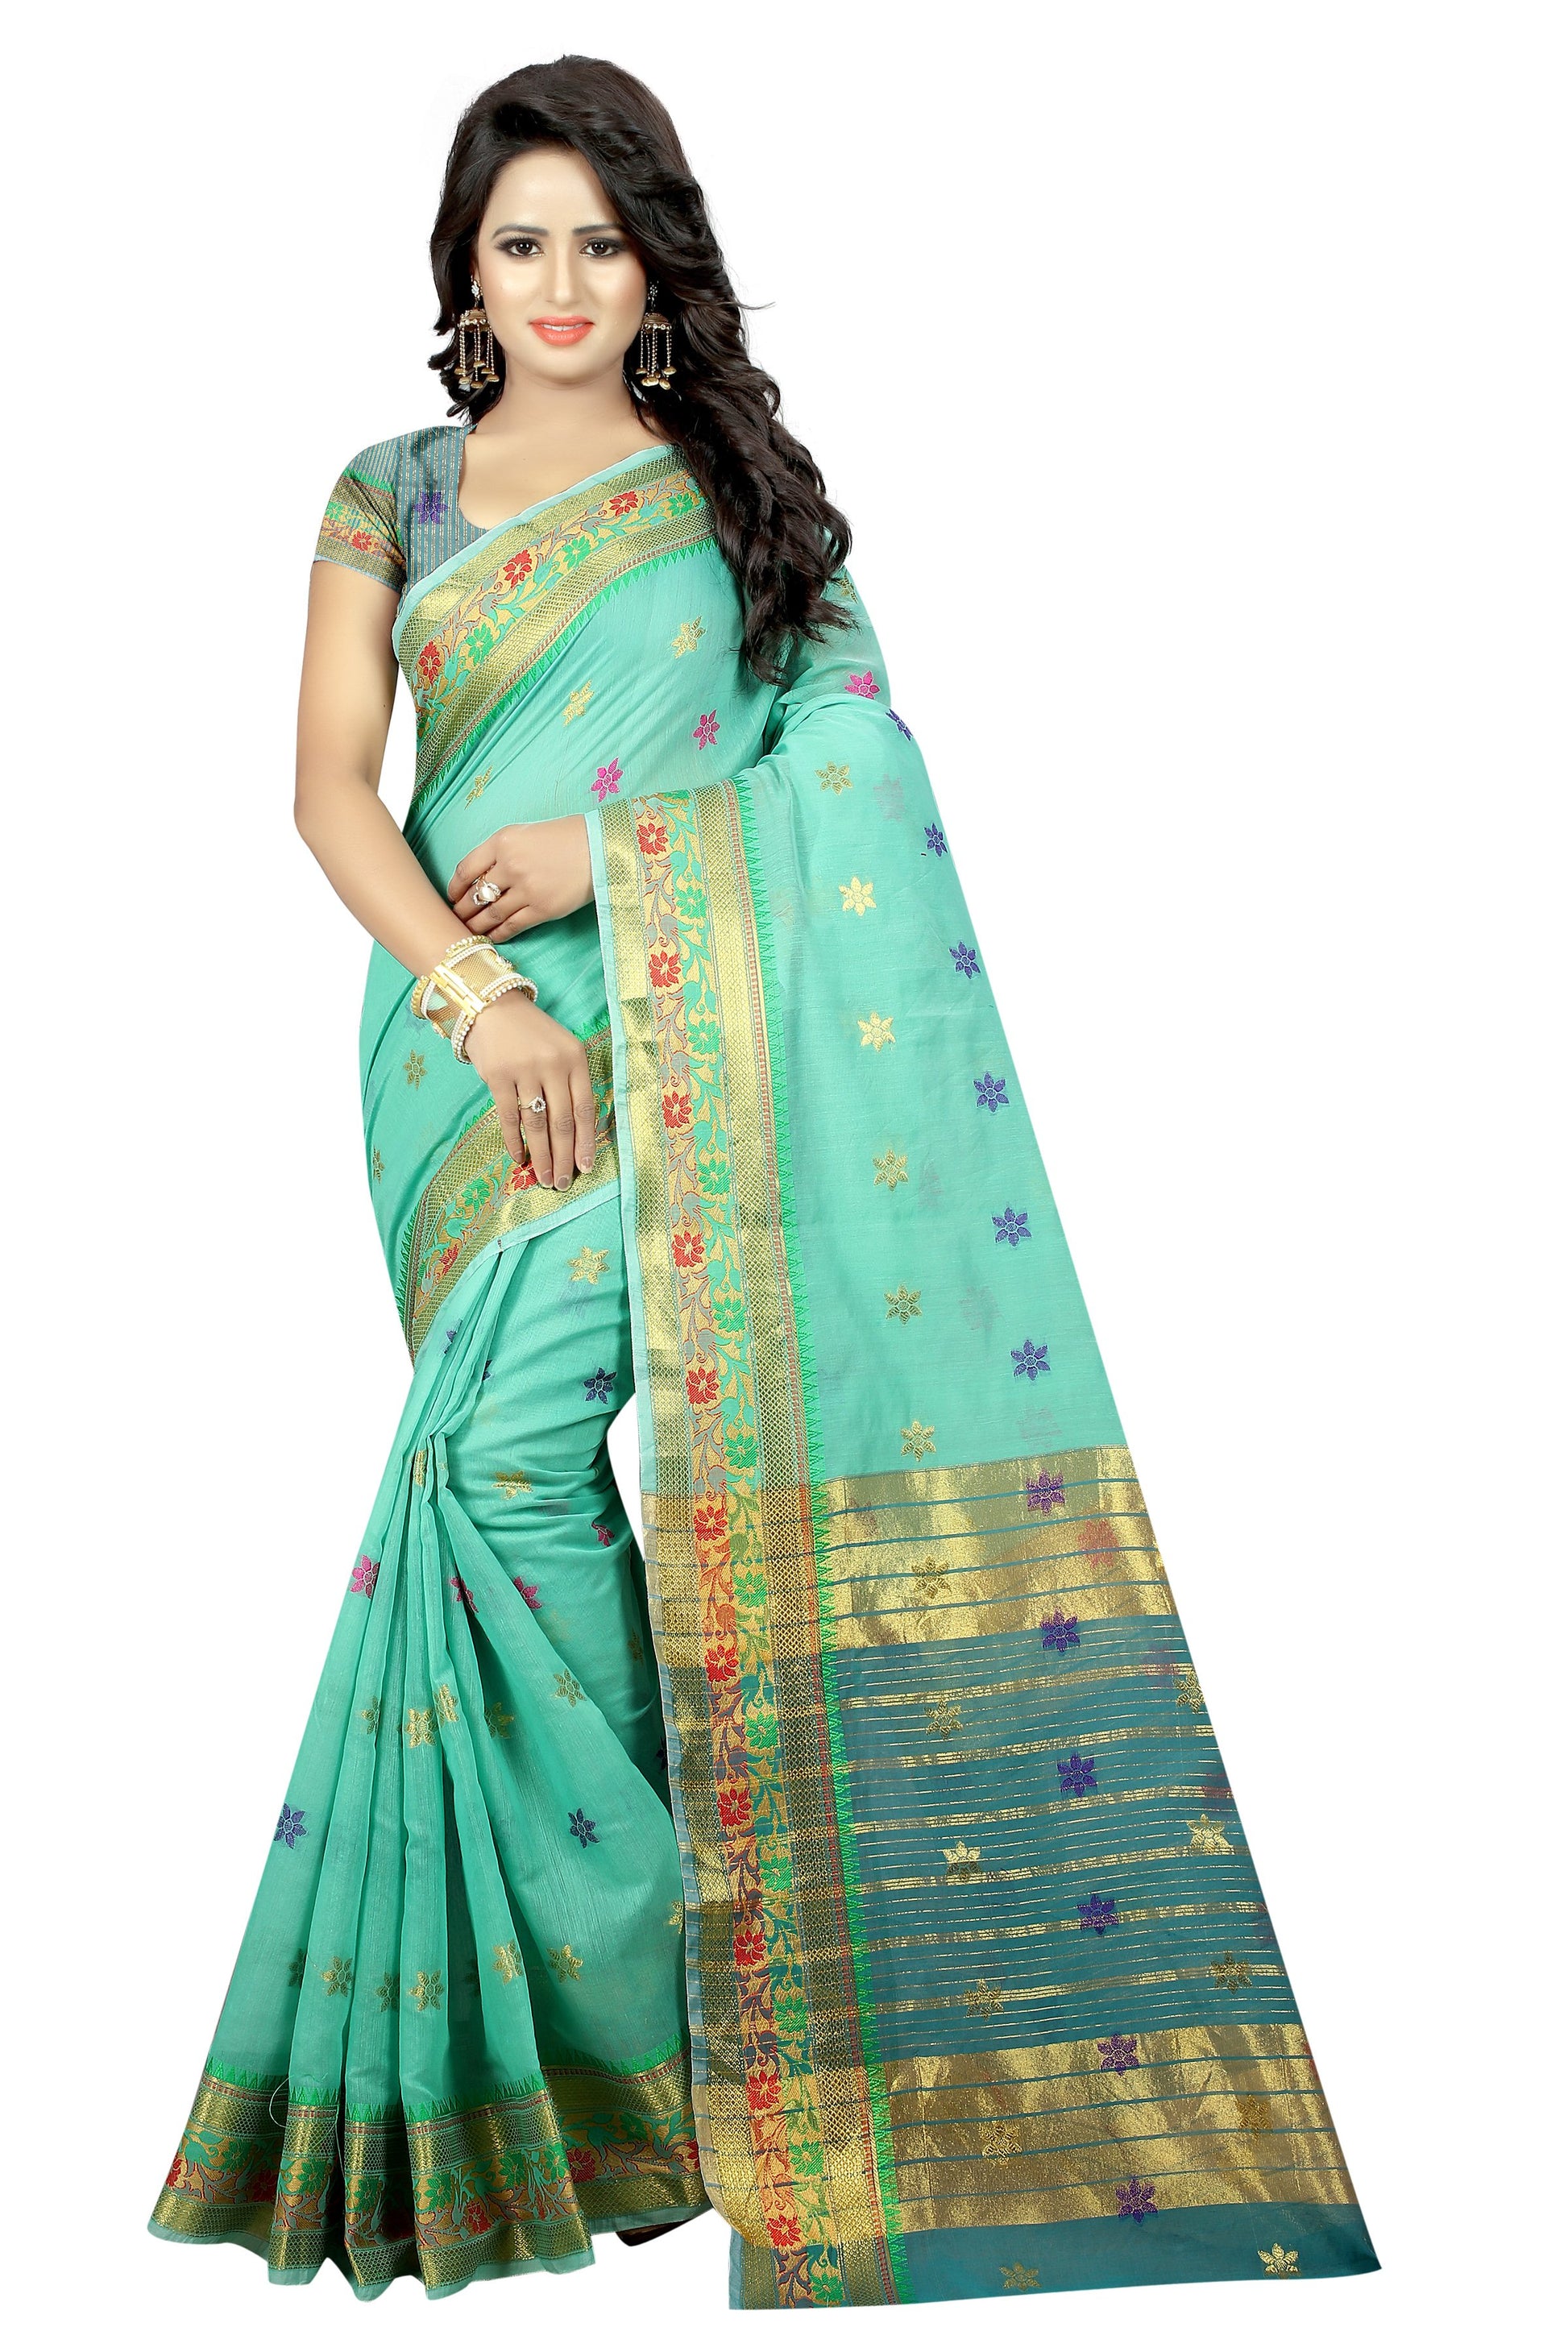 Zalak Light Green Banarasi Jacquard Silk Saree-SRP-JS-16 light green coloured saree with golden work